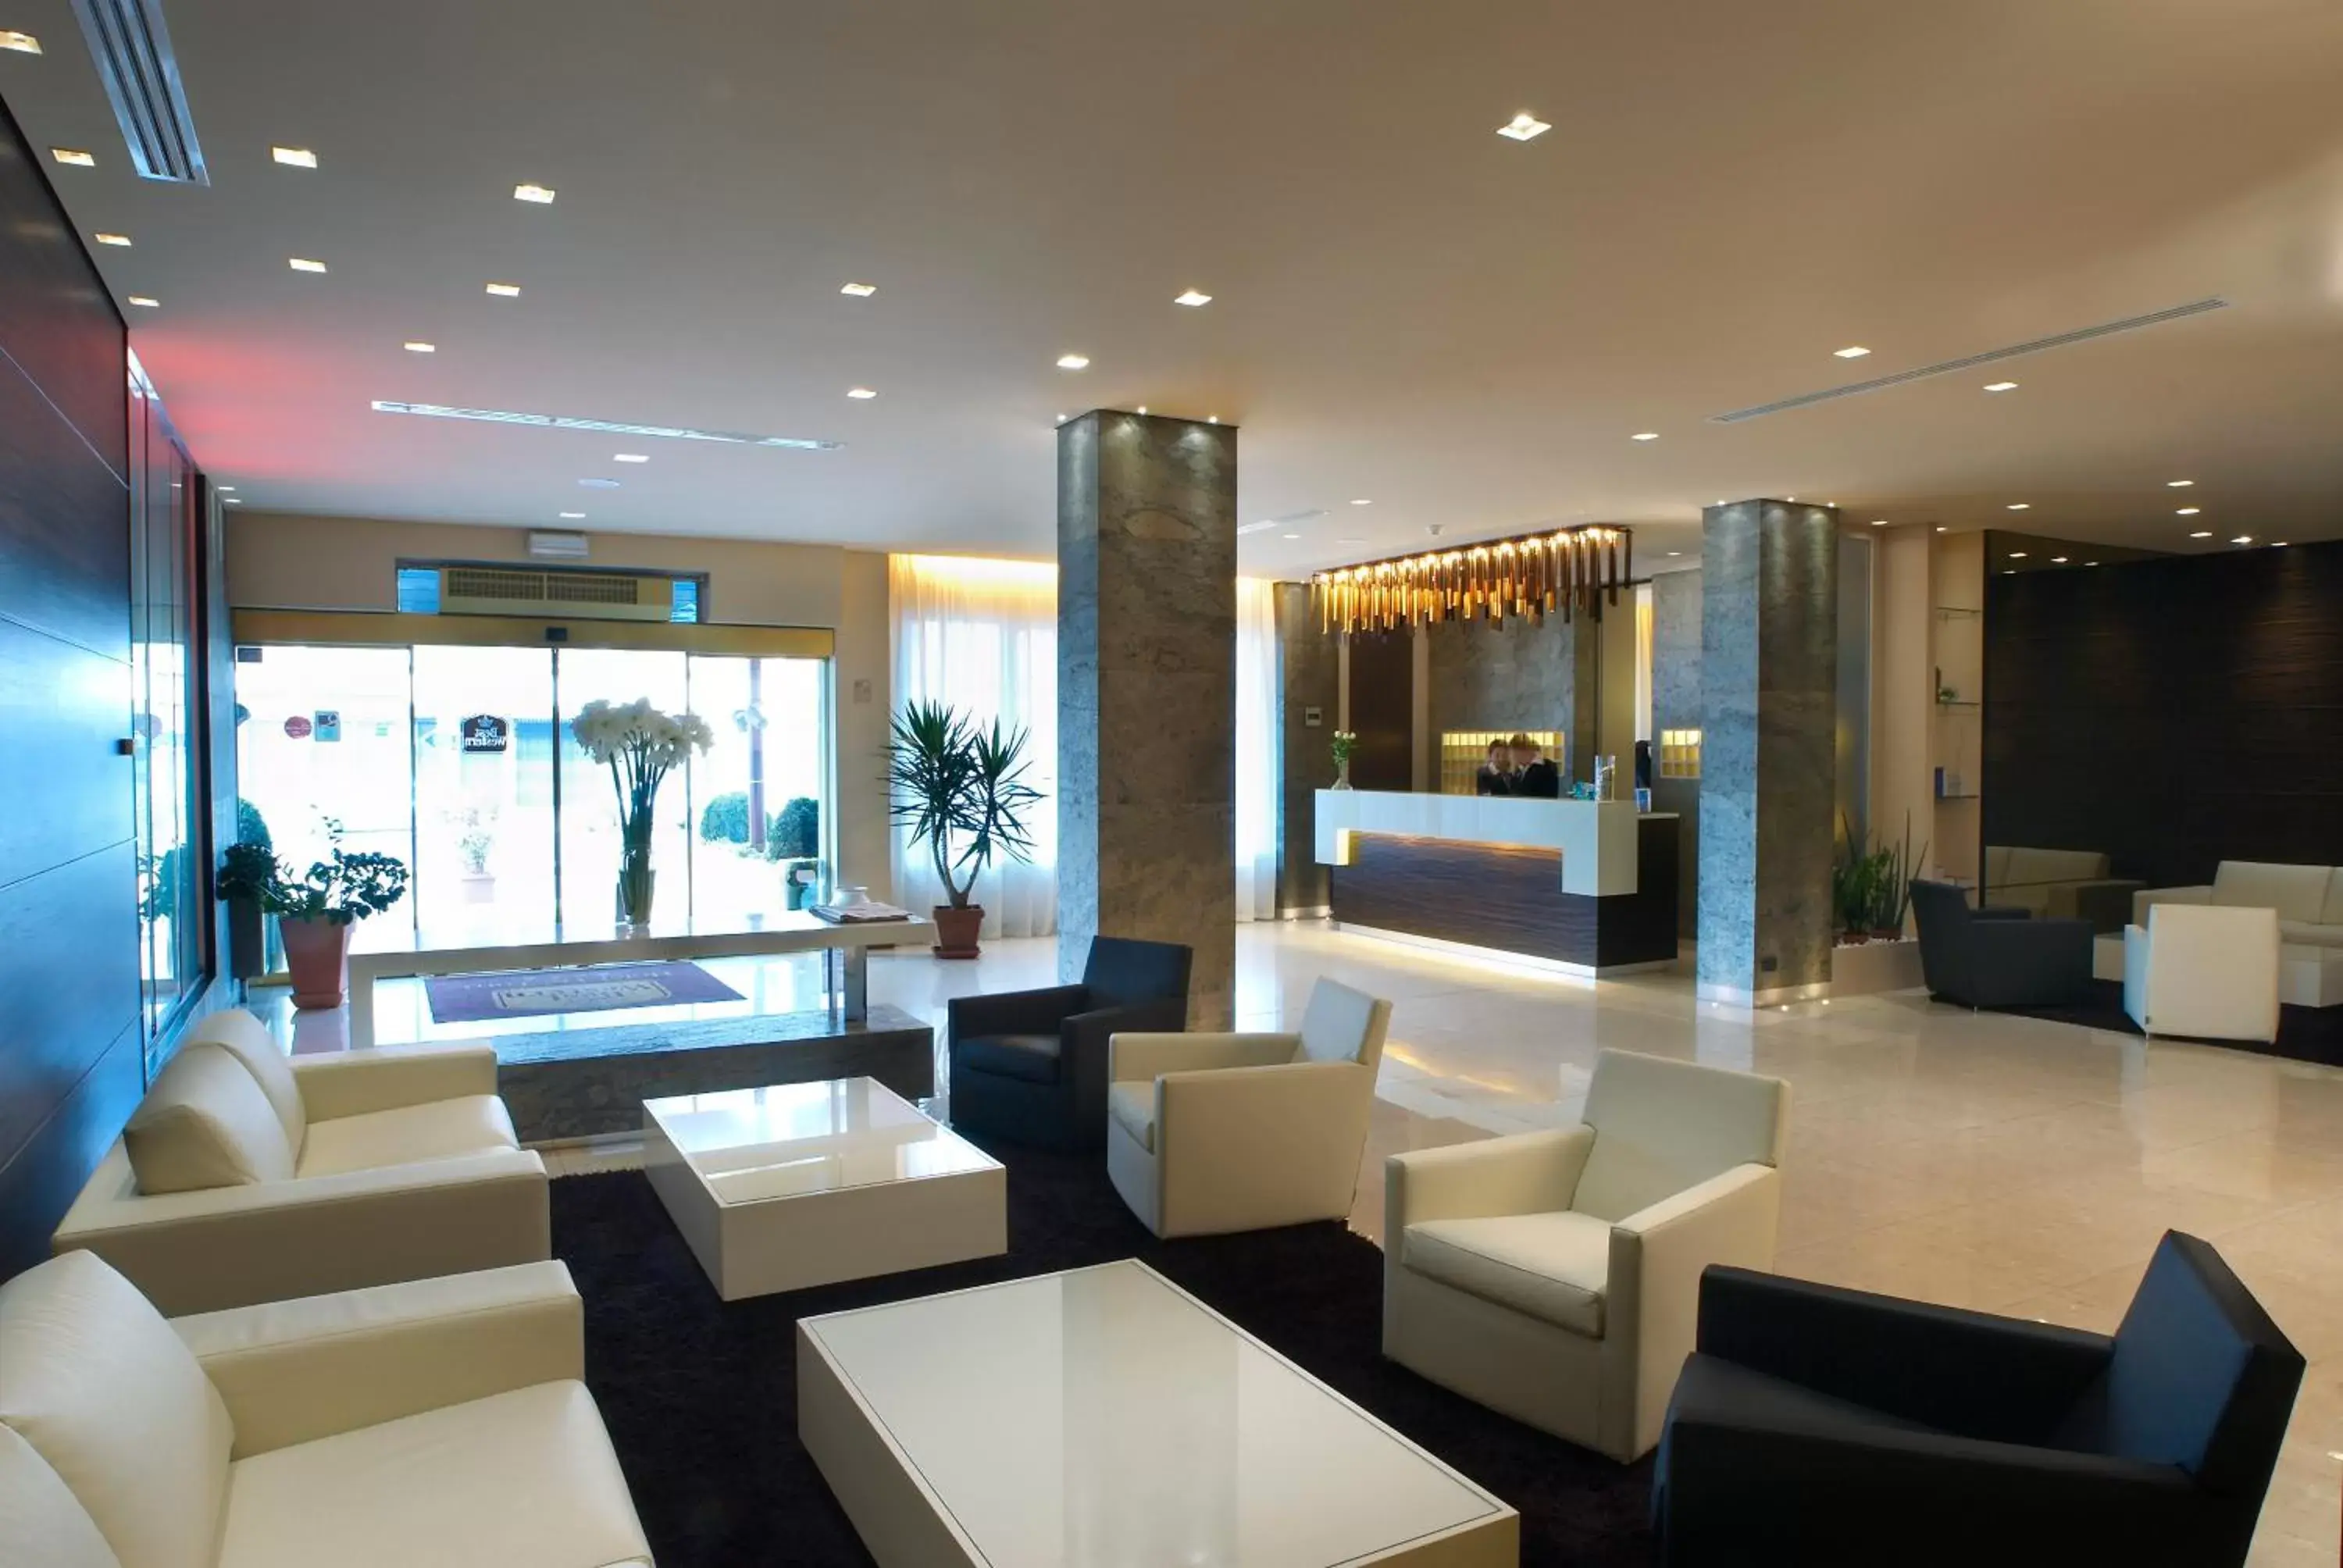 Lobby or reception, Lobby/Reception in Best Western Hotel Tre Torri